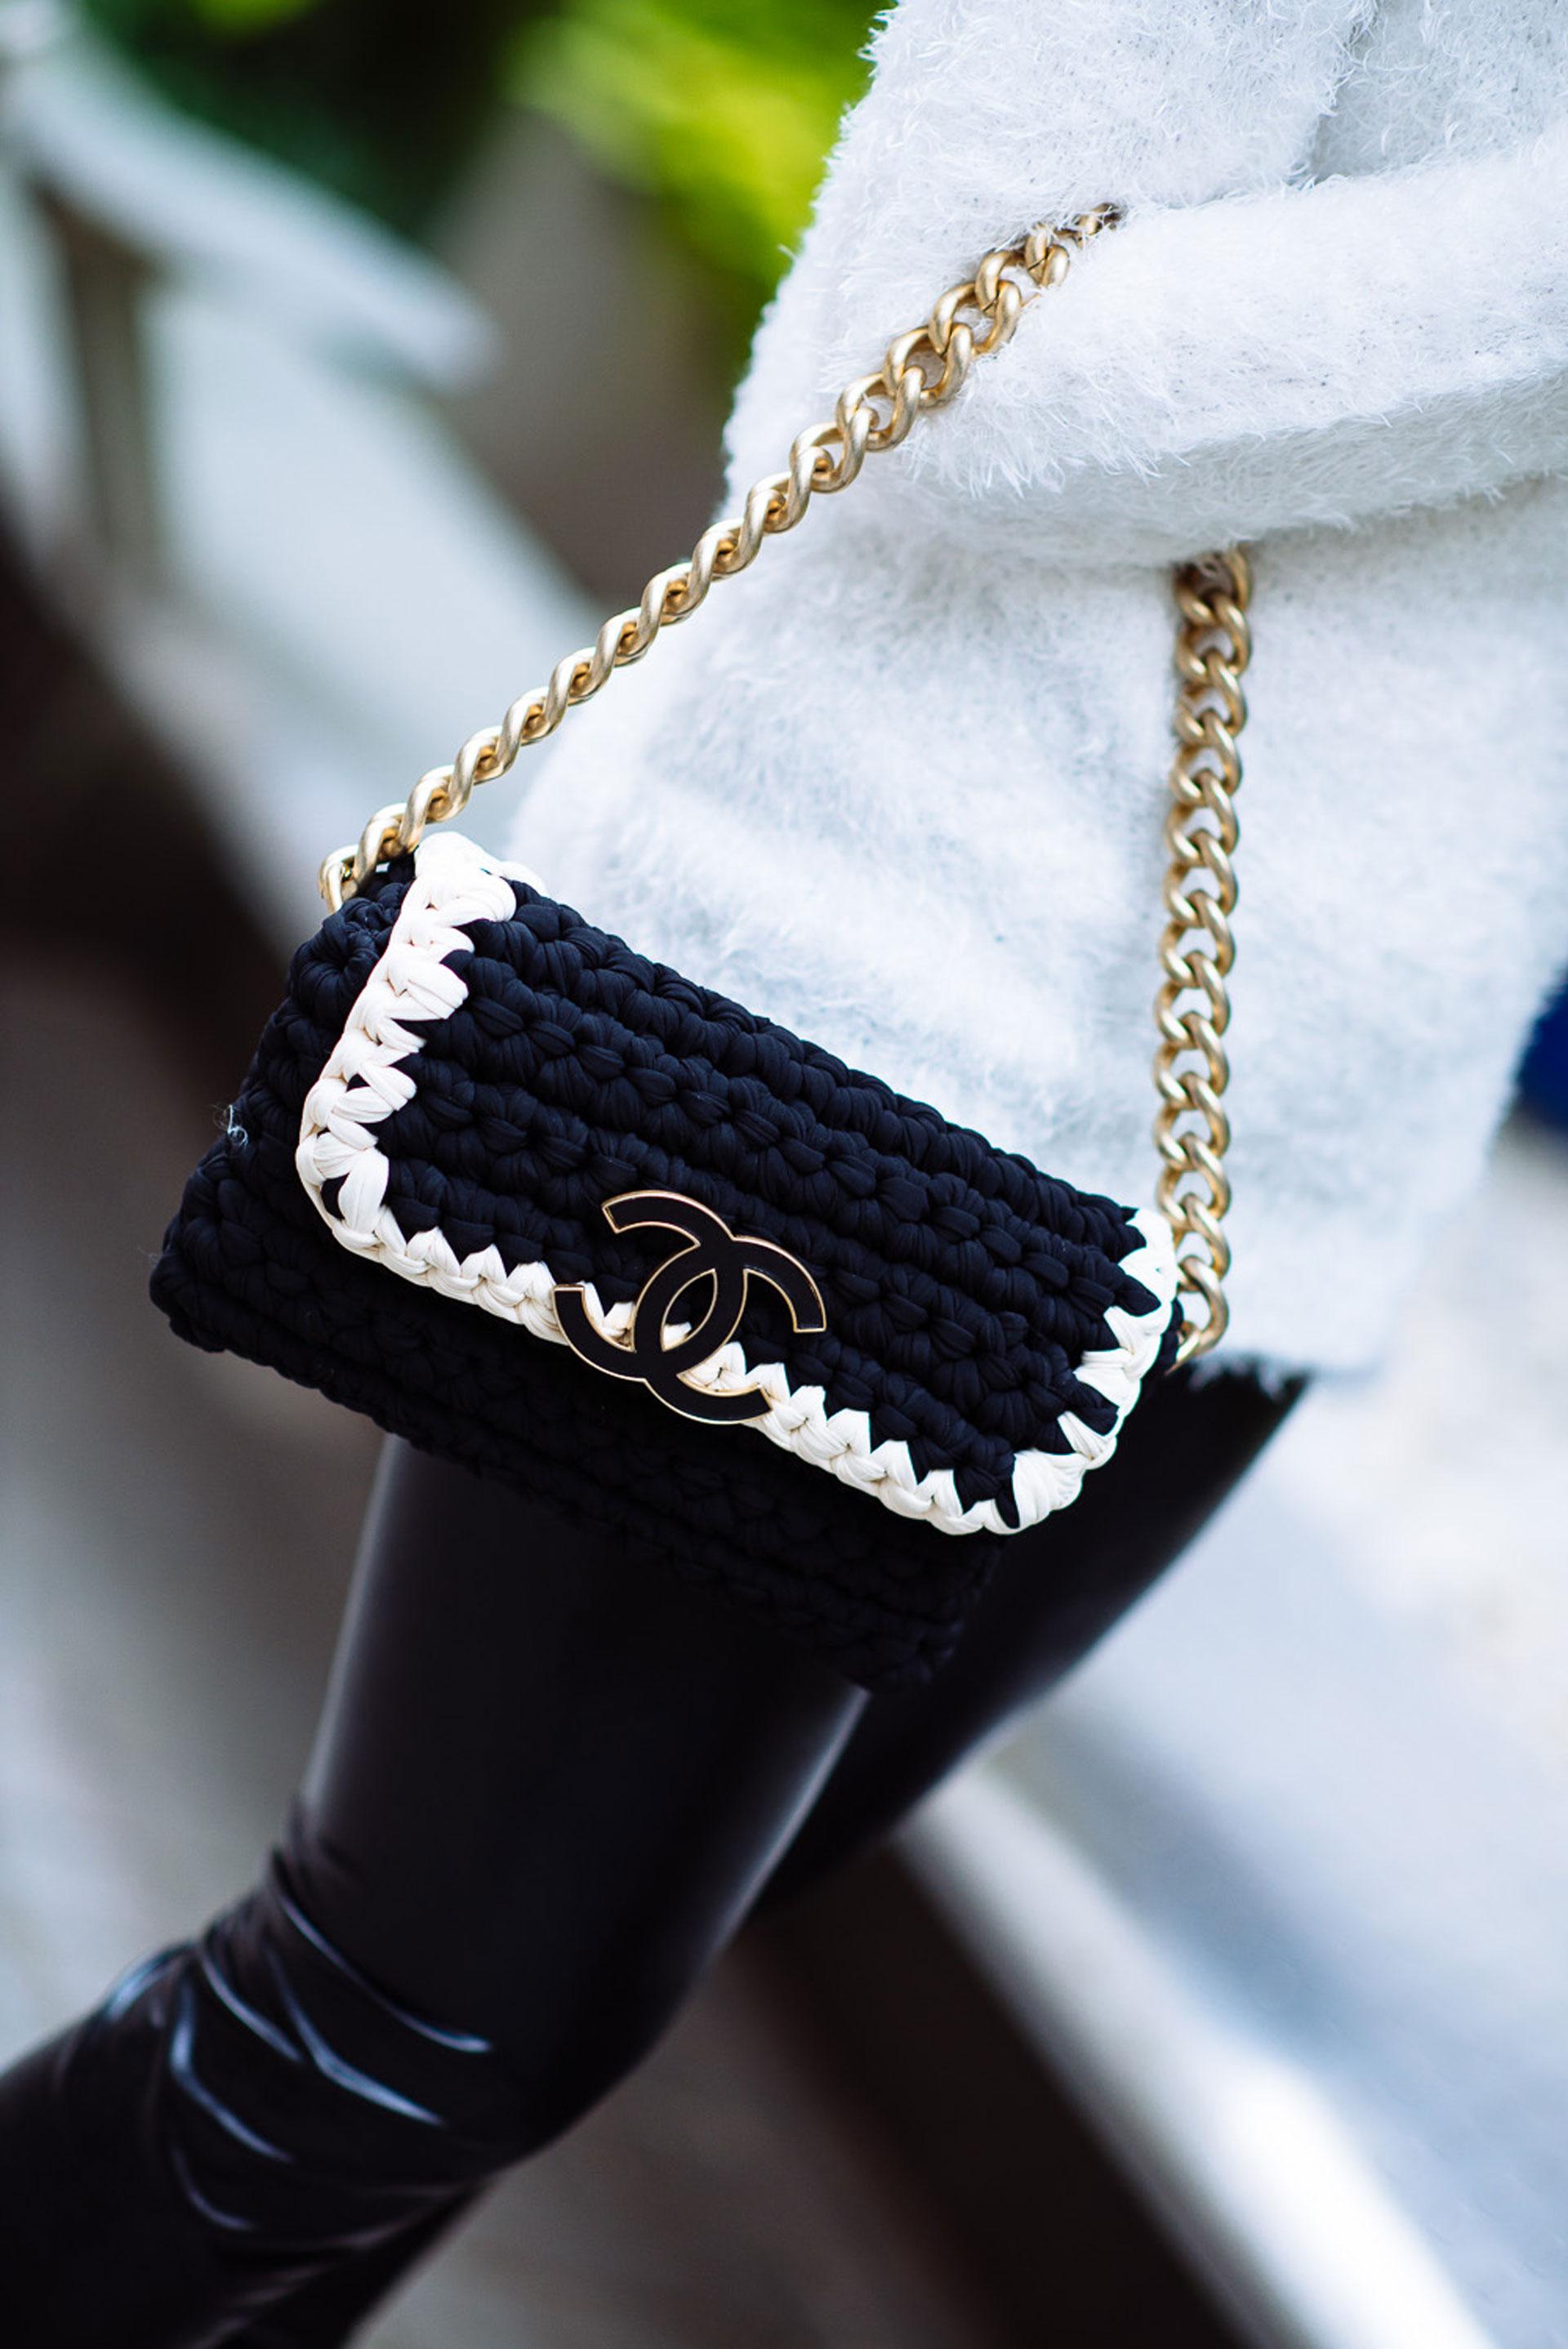 Chanel Interwoven Woven Crochet Bicolor Two Tone Medium Black & White Flap Bag

Sac à bandoulière Chanel
Entrelacs noir
Quincaillerie en or
Bandoulière à maillons de chaîne
Doublure en sergé et deux poches intérieures
Fermeture à bouton-poussoir sur